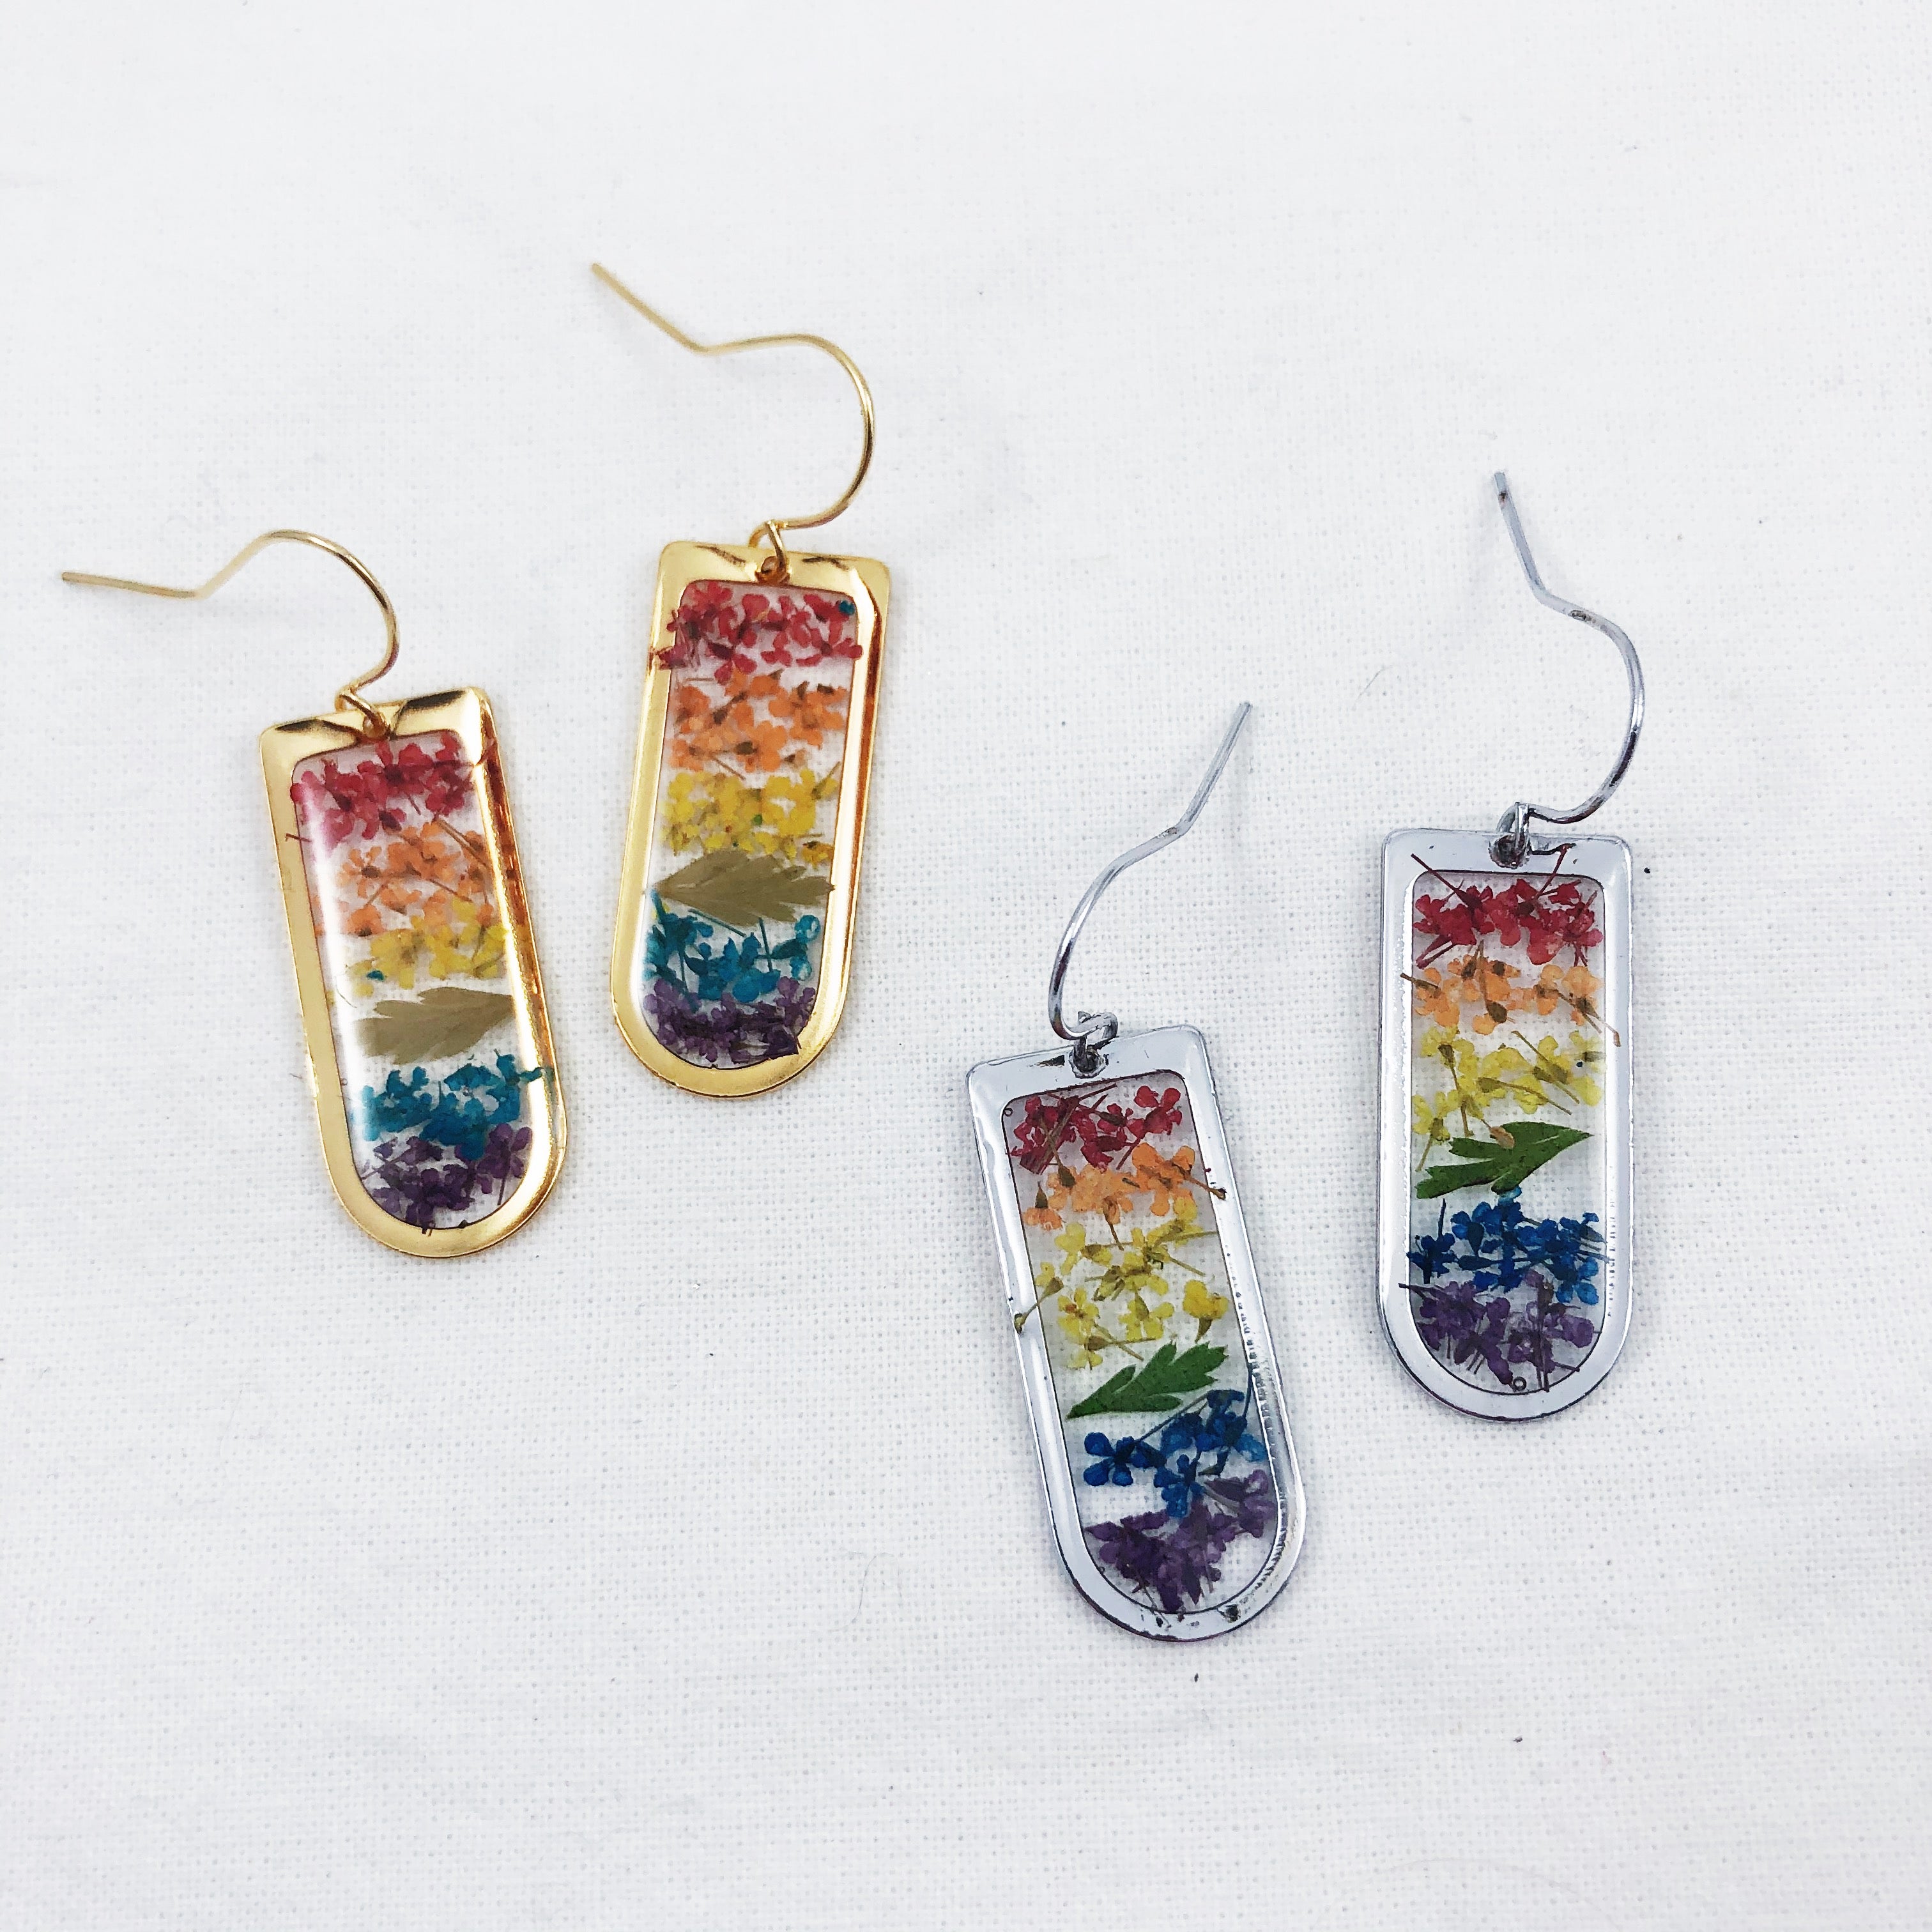 Gold Rainbow Flower Pride Earrings